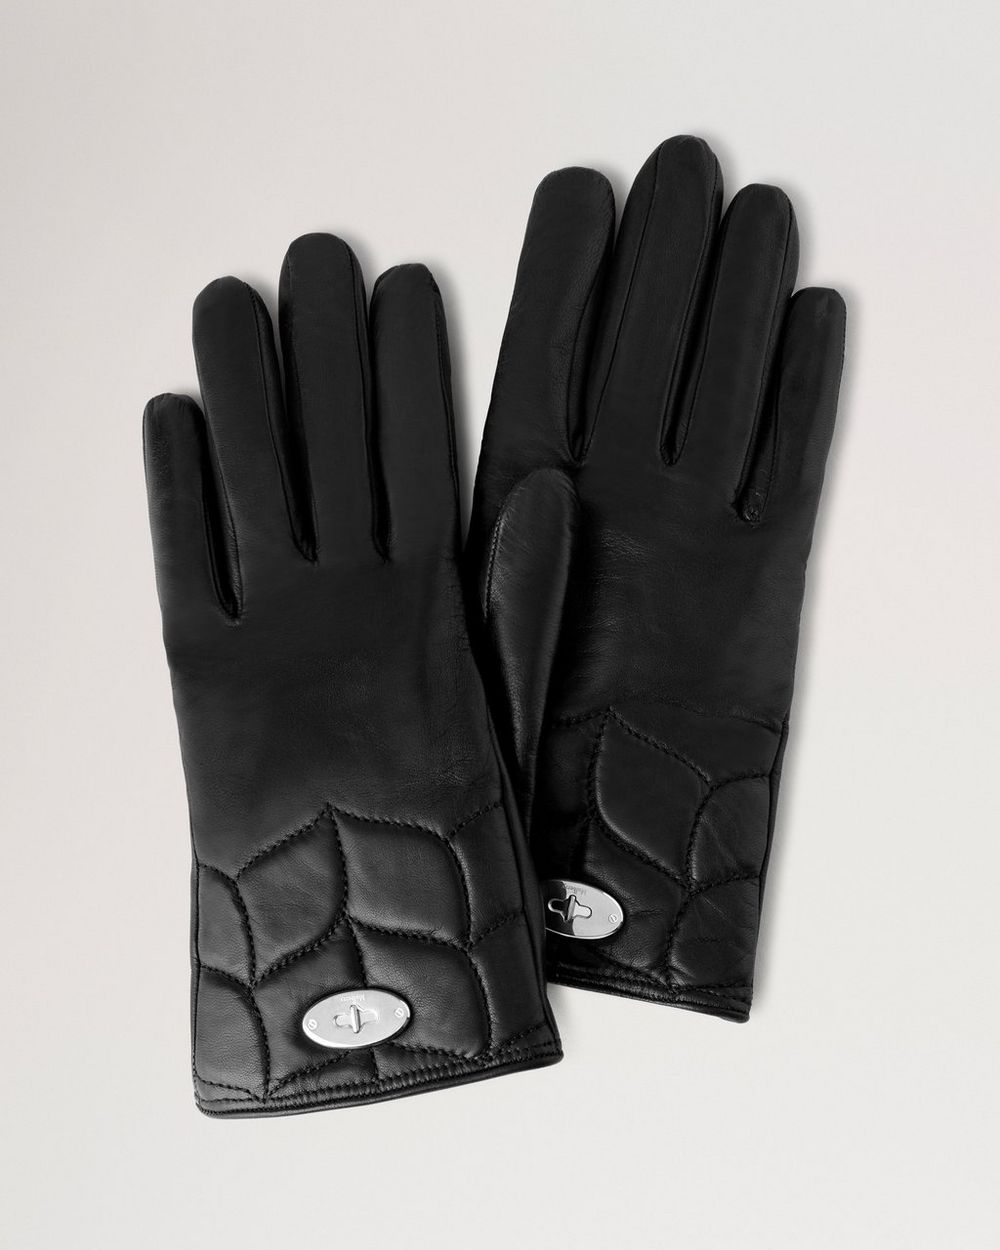 Softie Gloves